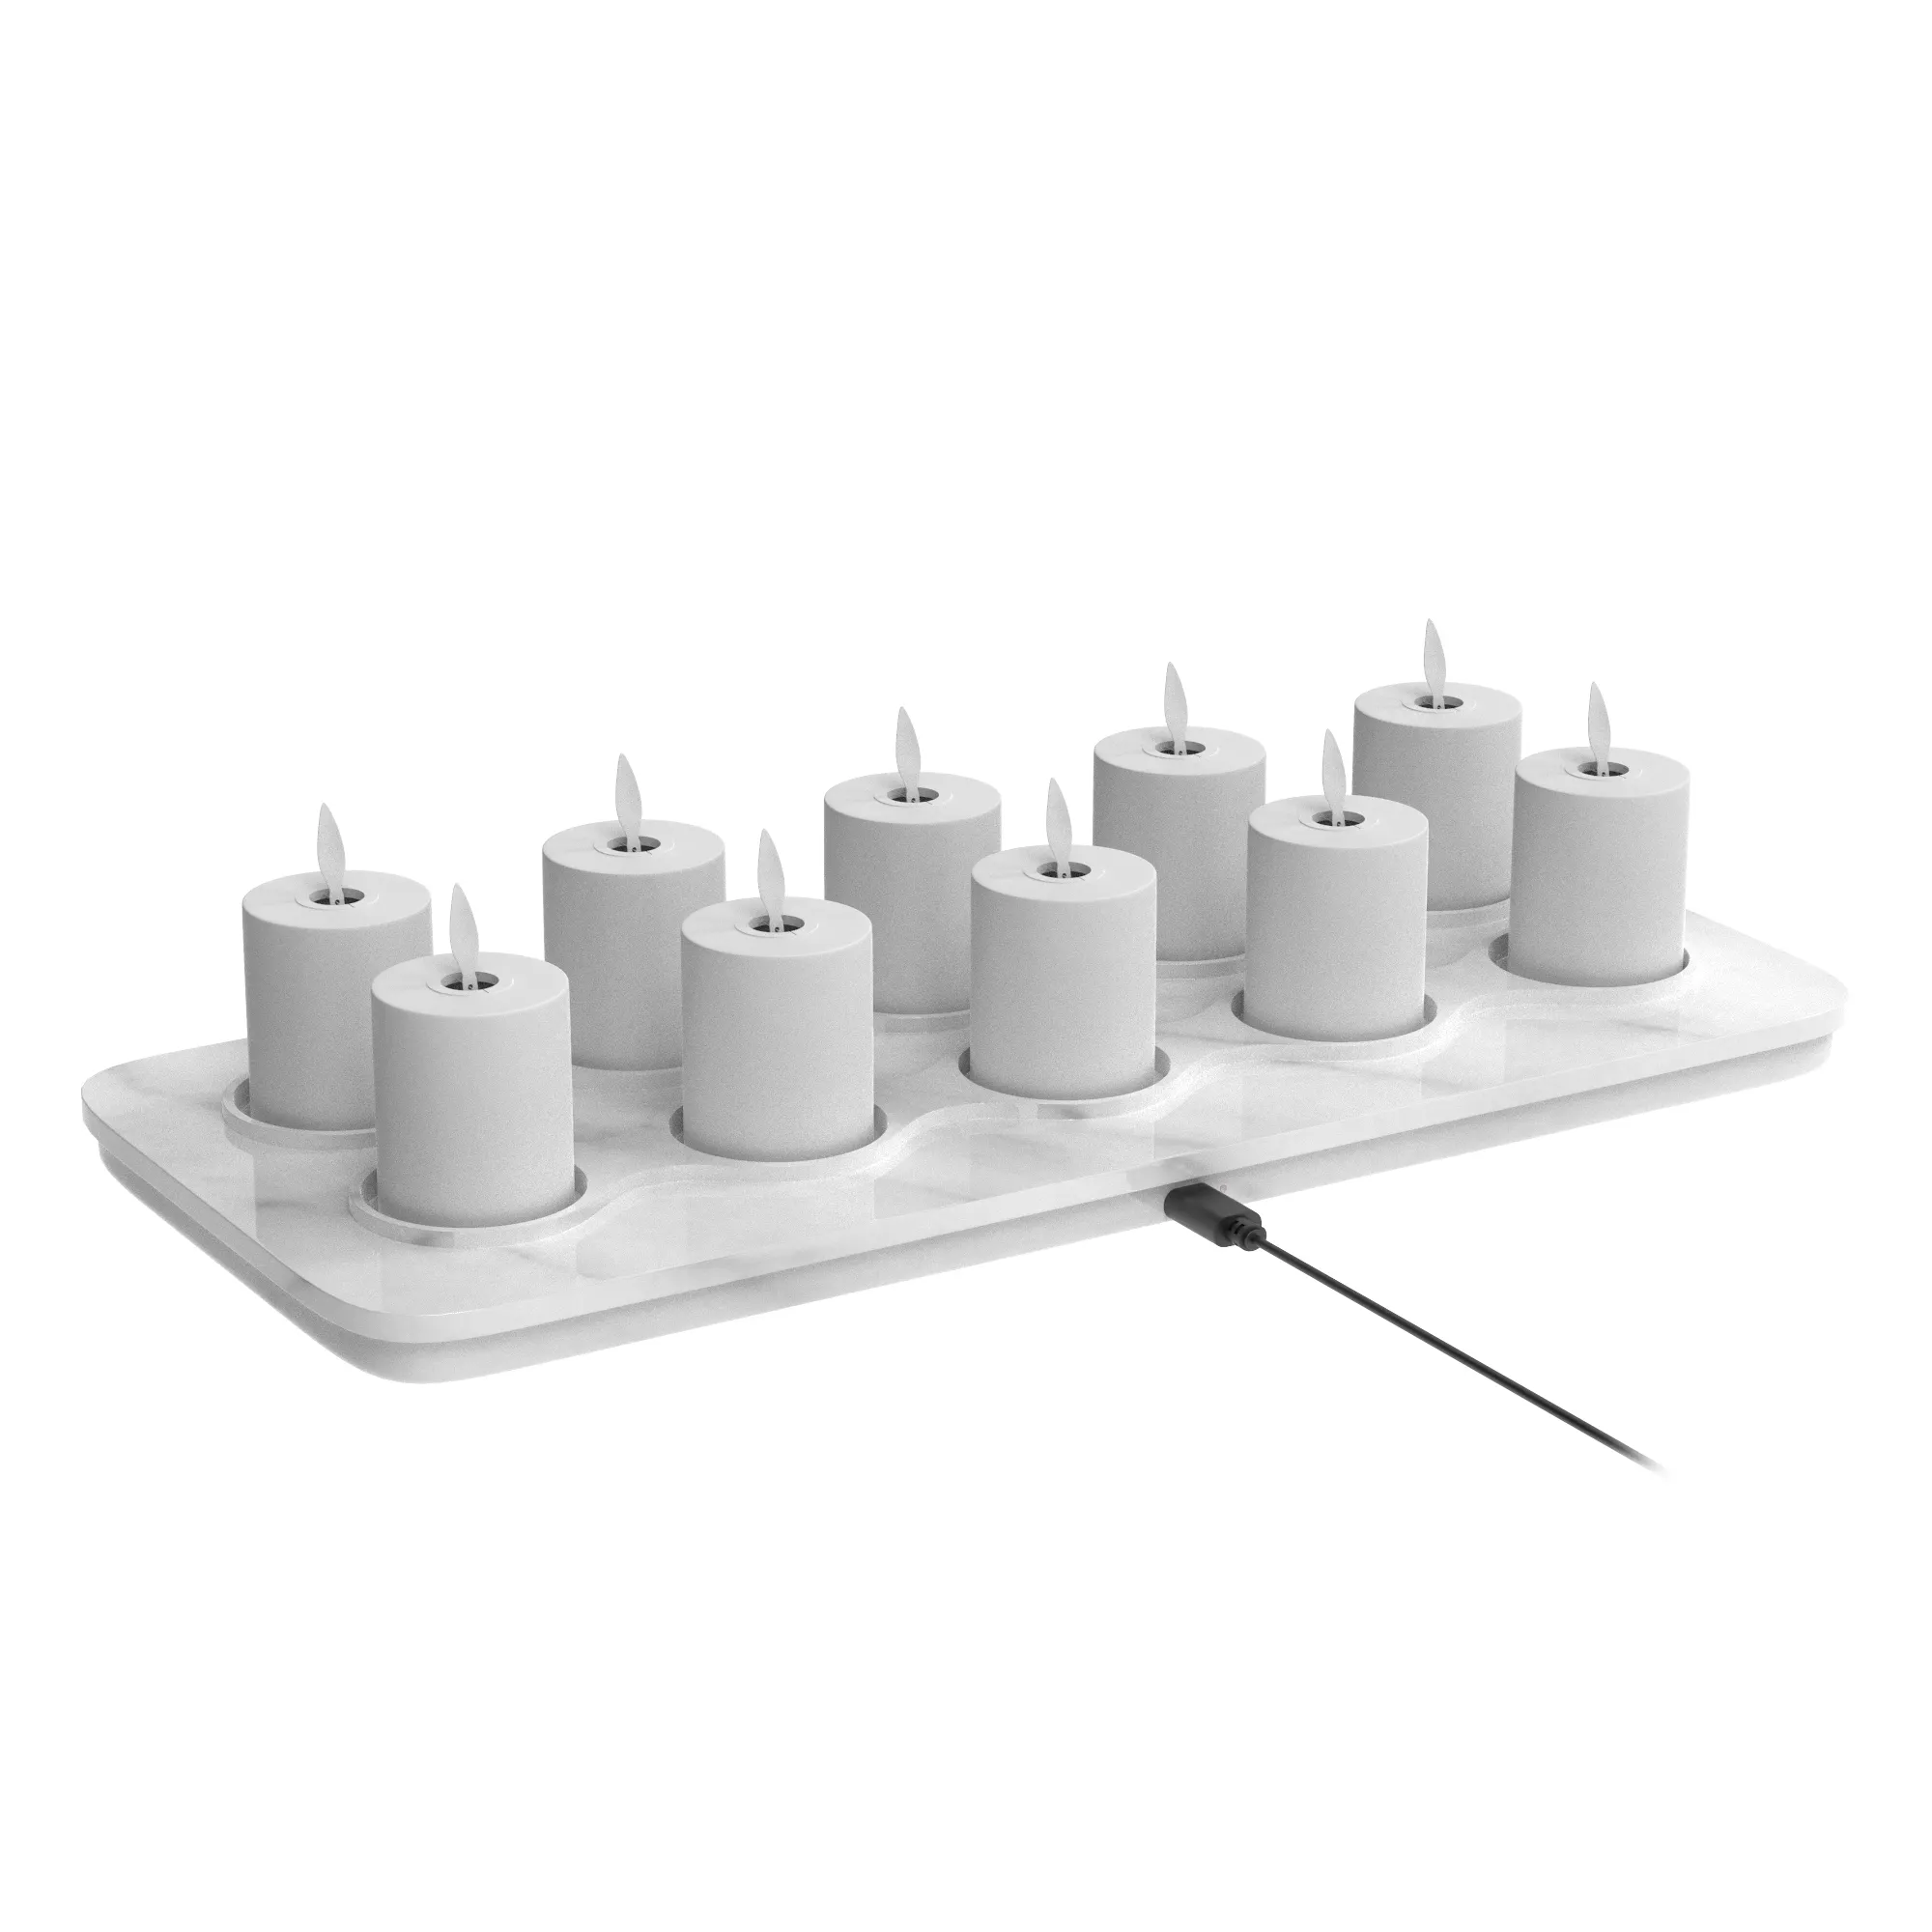 10 pz Smart LED candela altalena fiamma tealight candela ricaricabile lampada a candela per la decorazione della casa